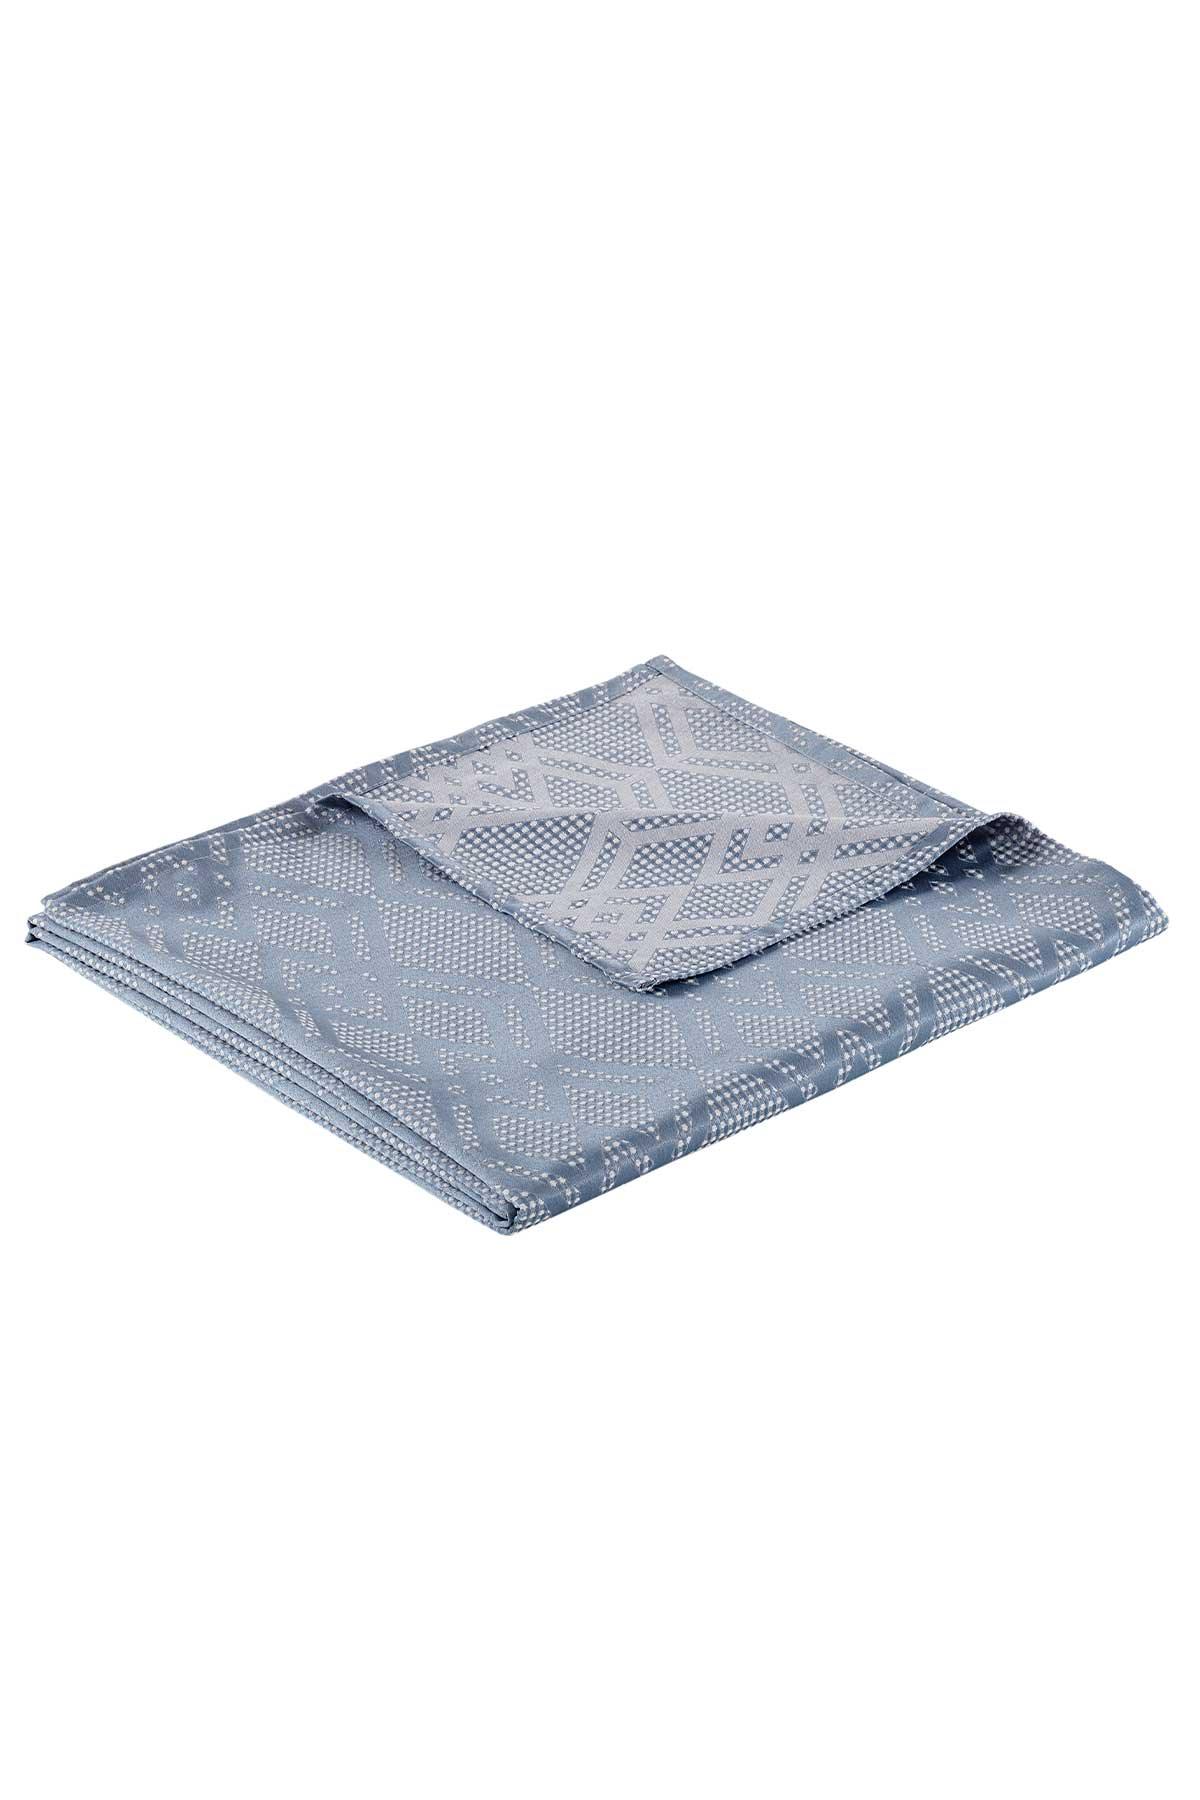 Maria Çok Amaçlı Pamuklu Pike&Yatak Örtüsü Mavi (180x240cm) - Elart Home